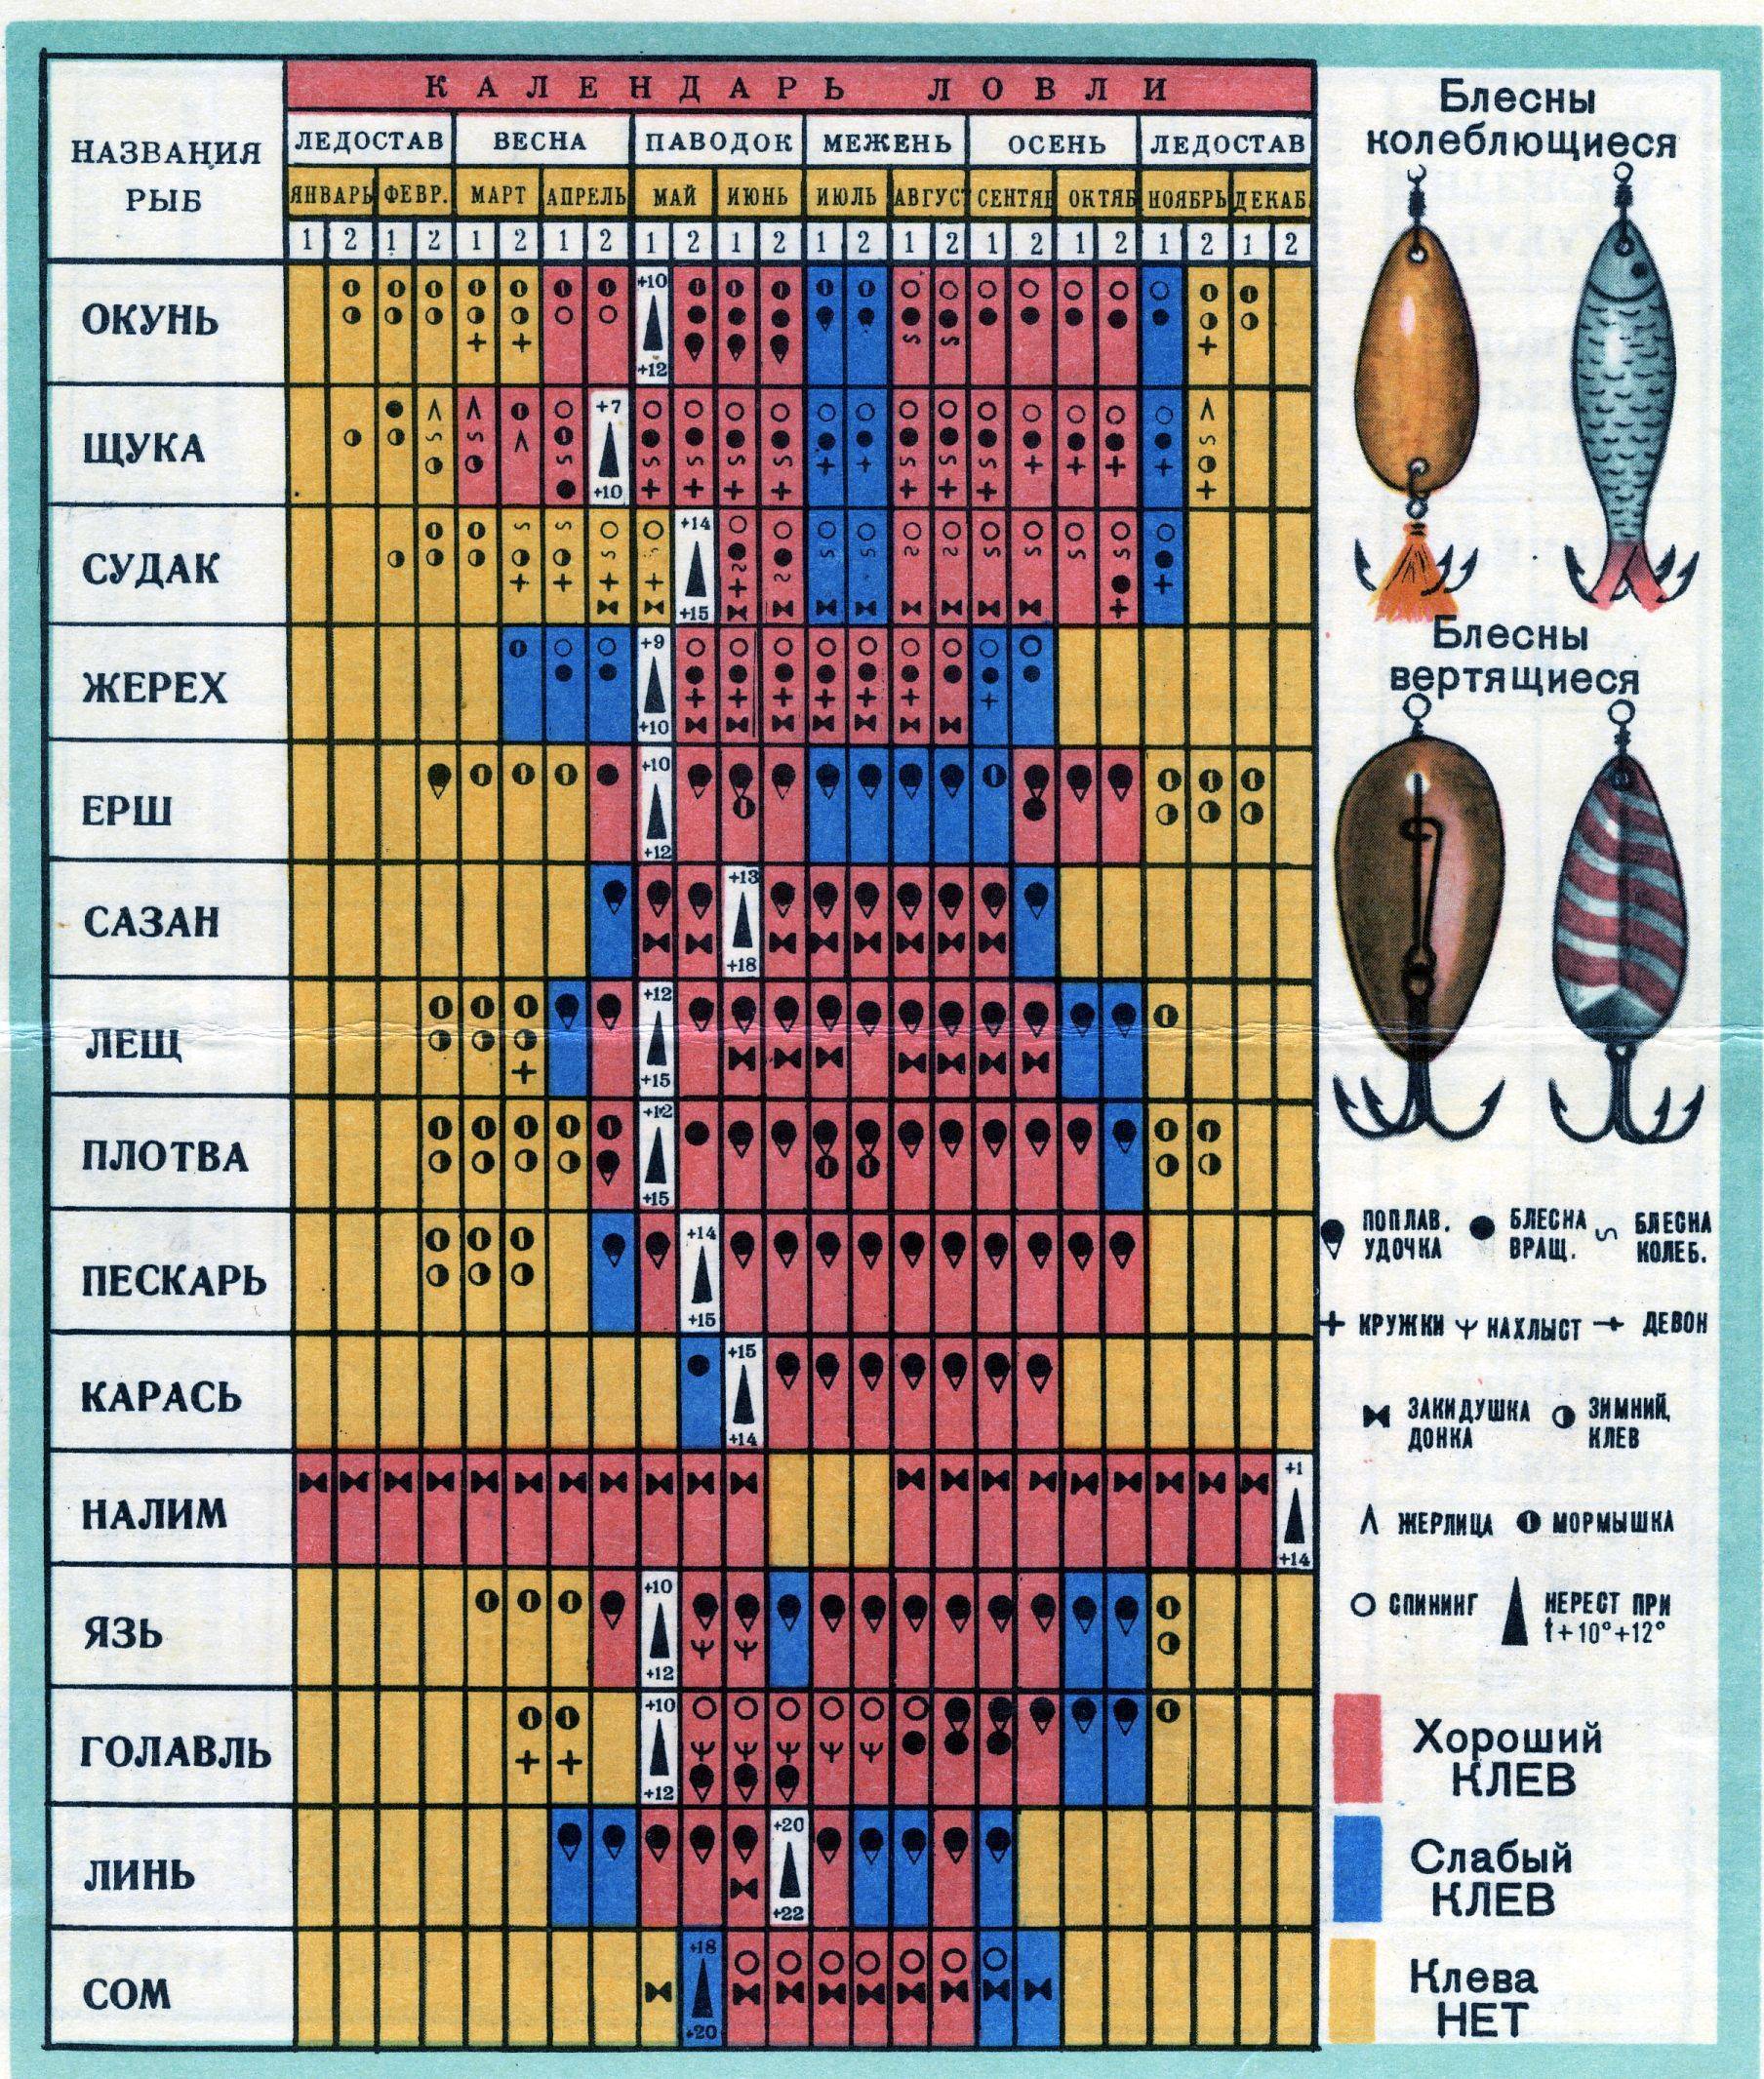 Рыба белый амур: польза и вред для организма